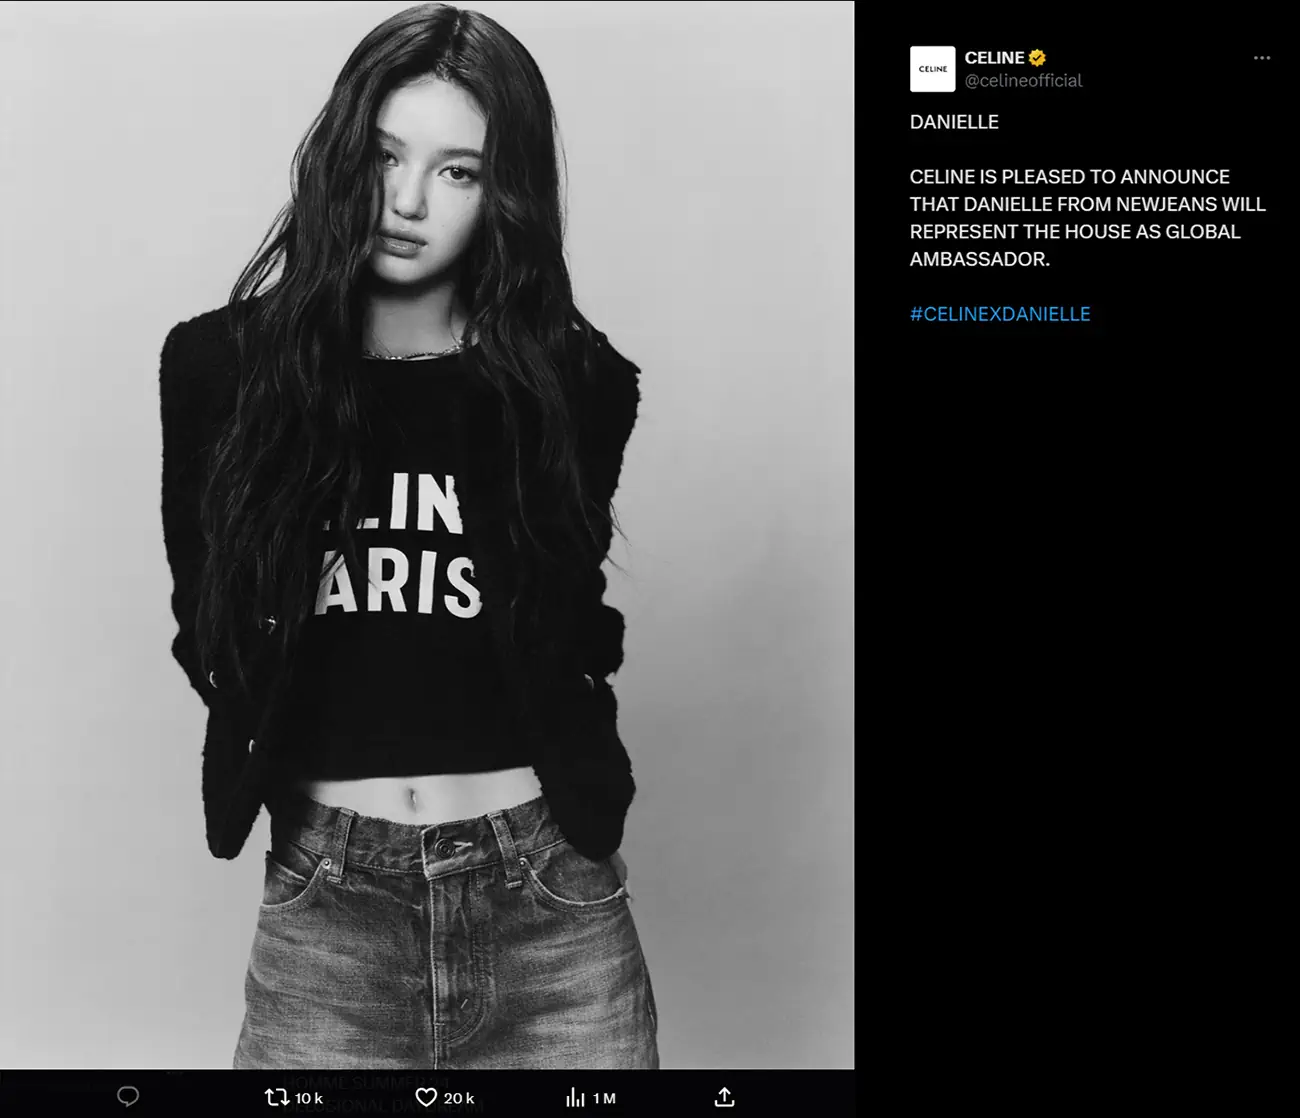 Celine named NewJeans' Danielle as global ambassador